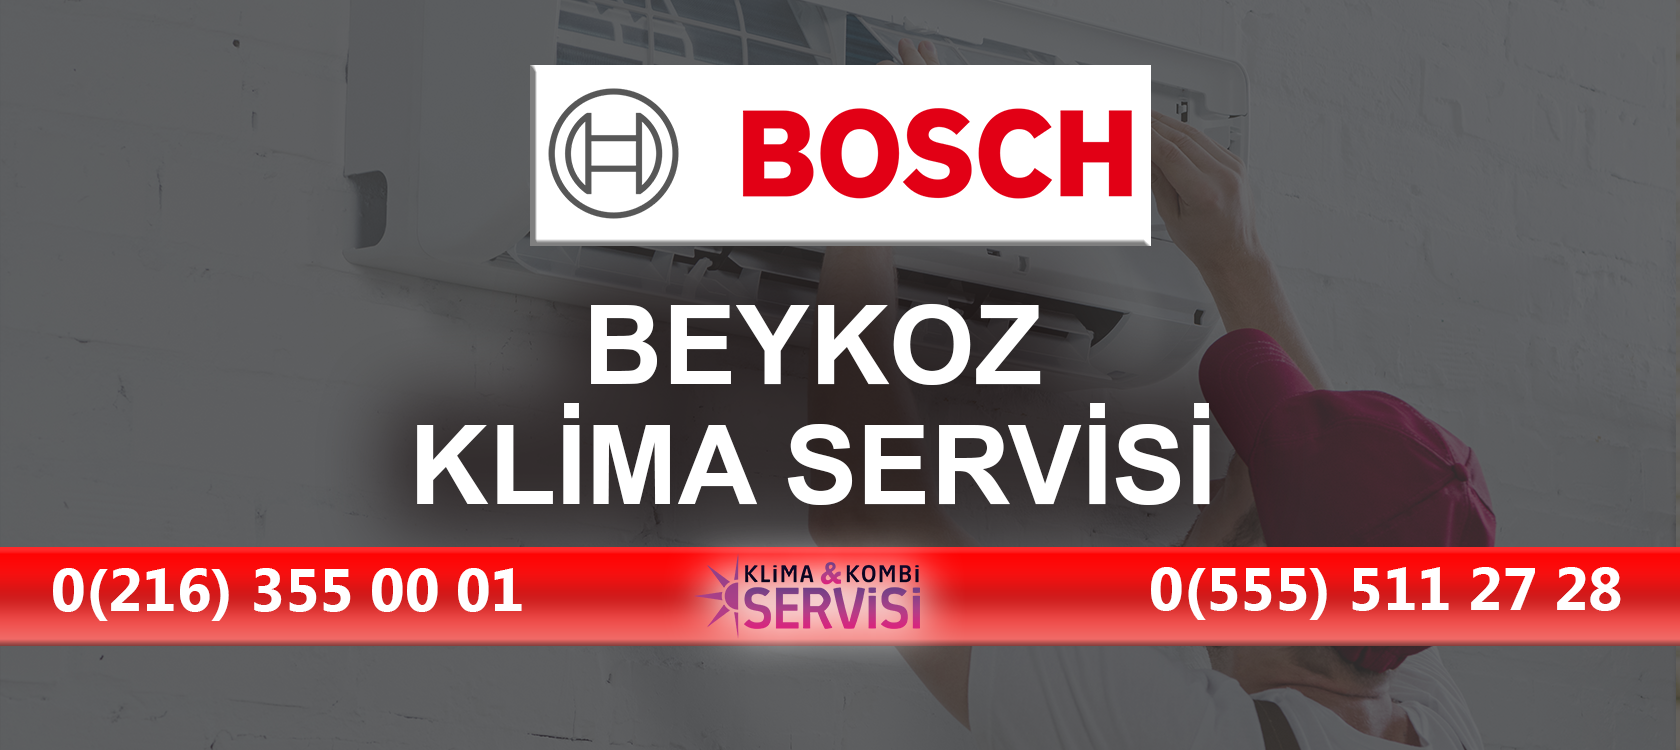 Beykoz Bosch Klima Servisi